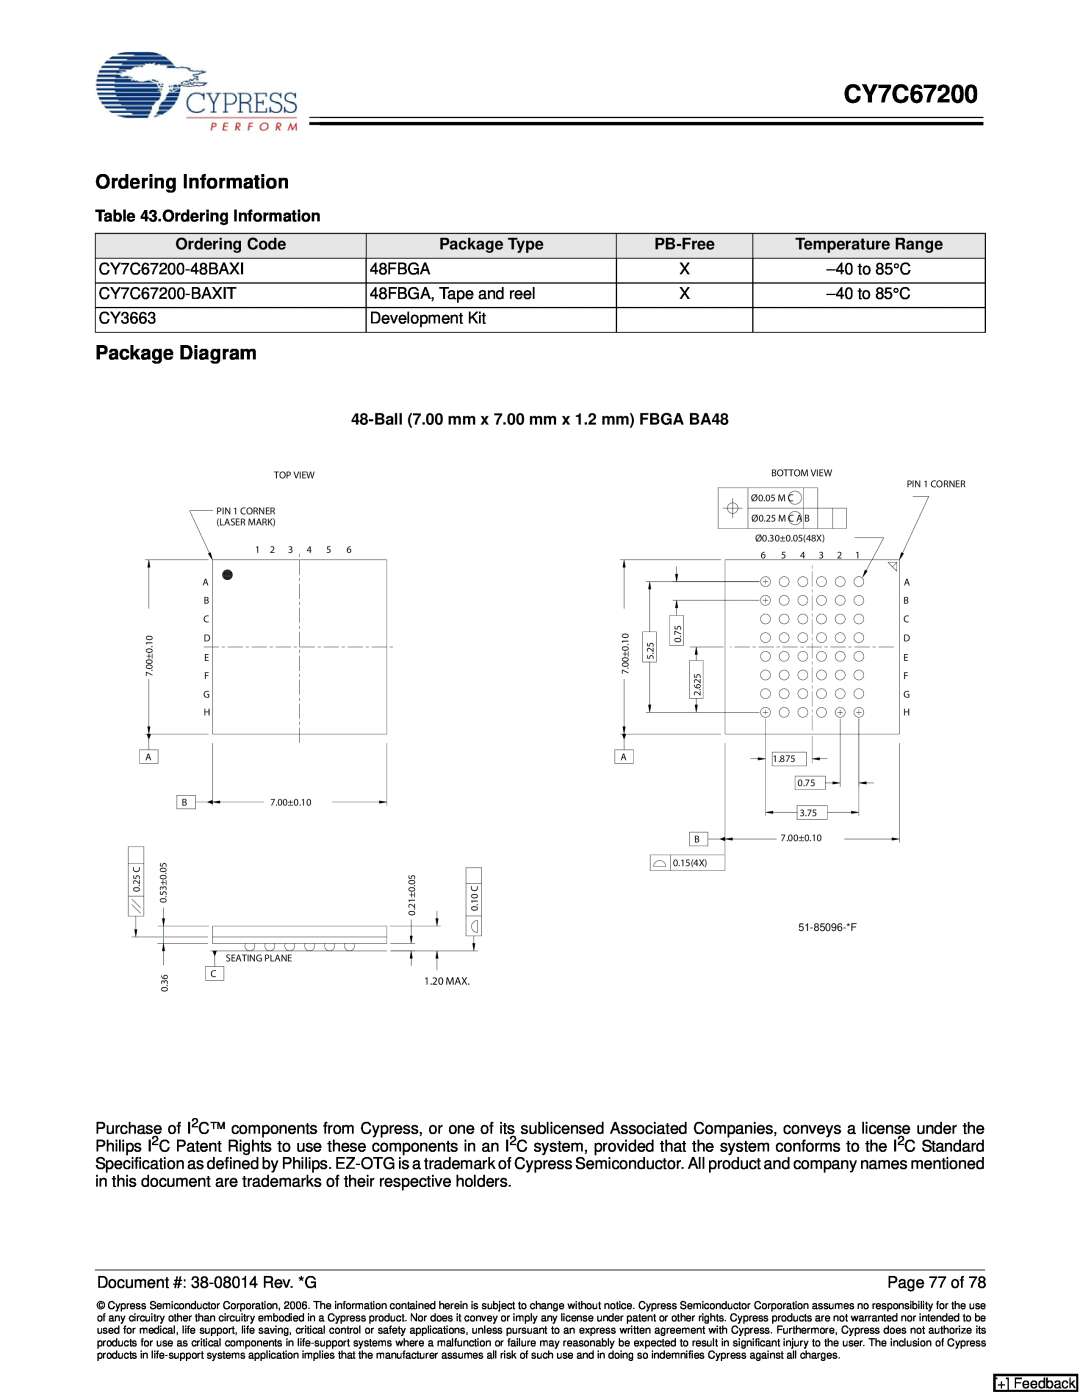 Cypress CY7C67200 manual Ordering Information, Package Diagram, Ordering Code, Package Type, PB-Free 